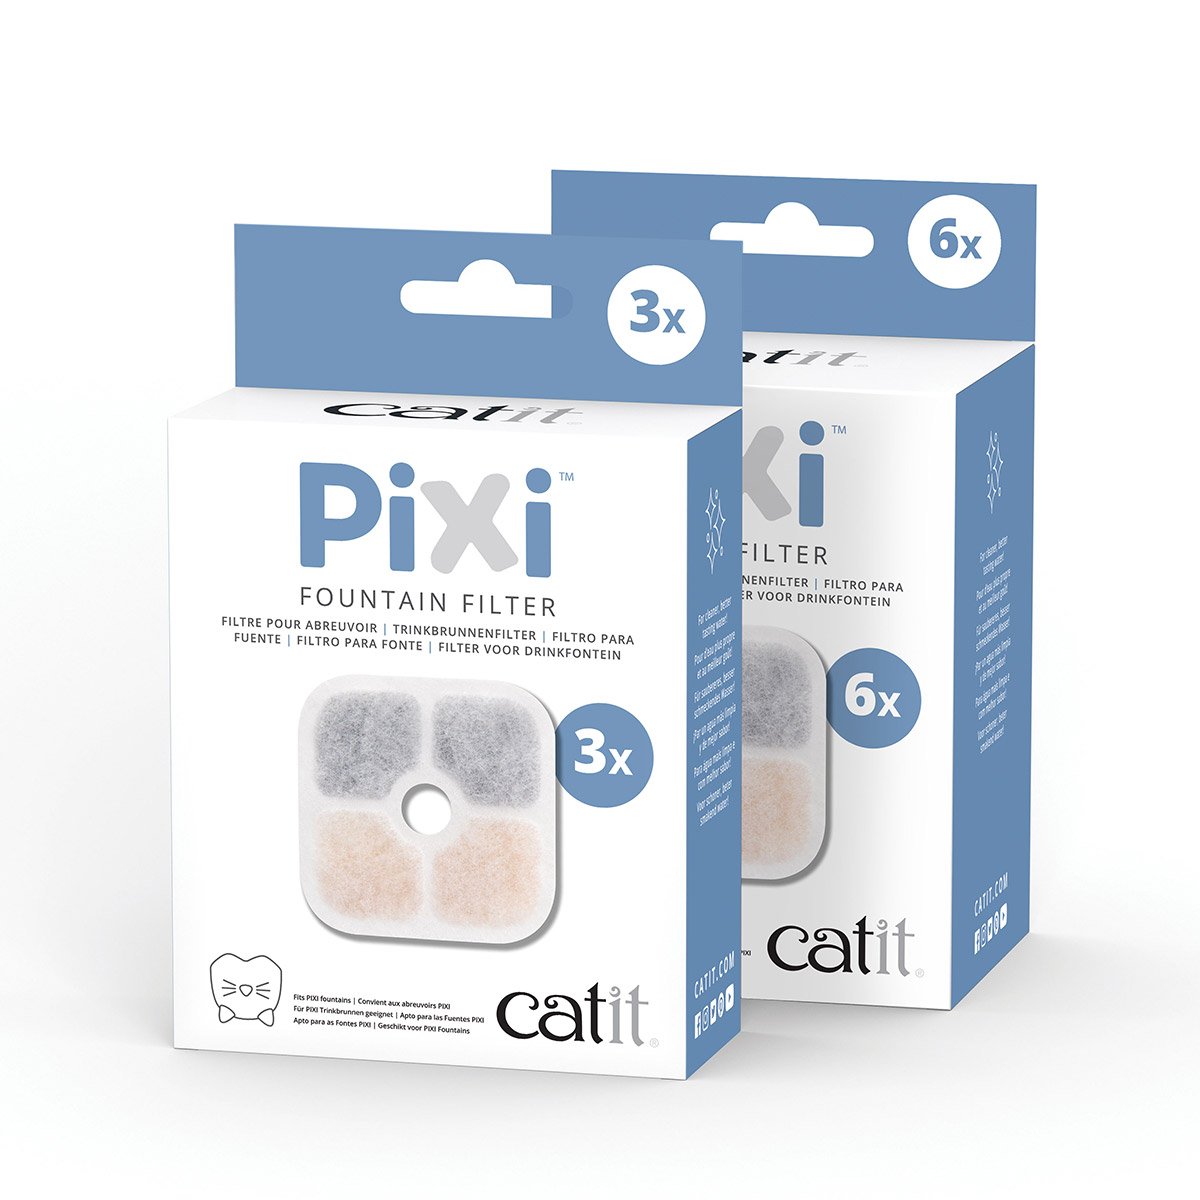 Catit Pixi Fountain Filter 3er-Pack von Catit